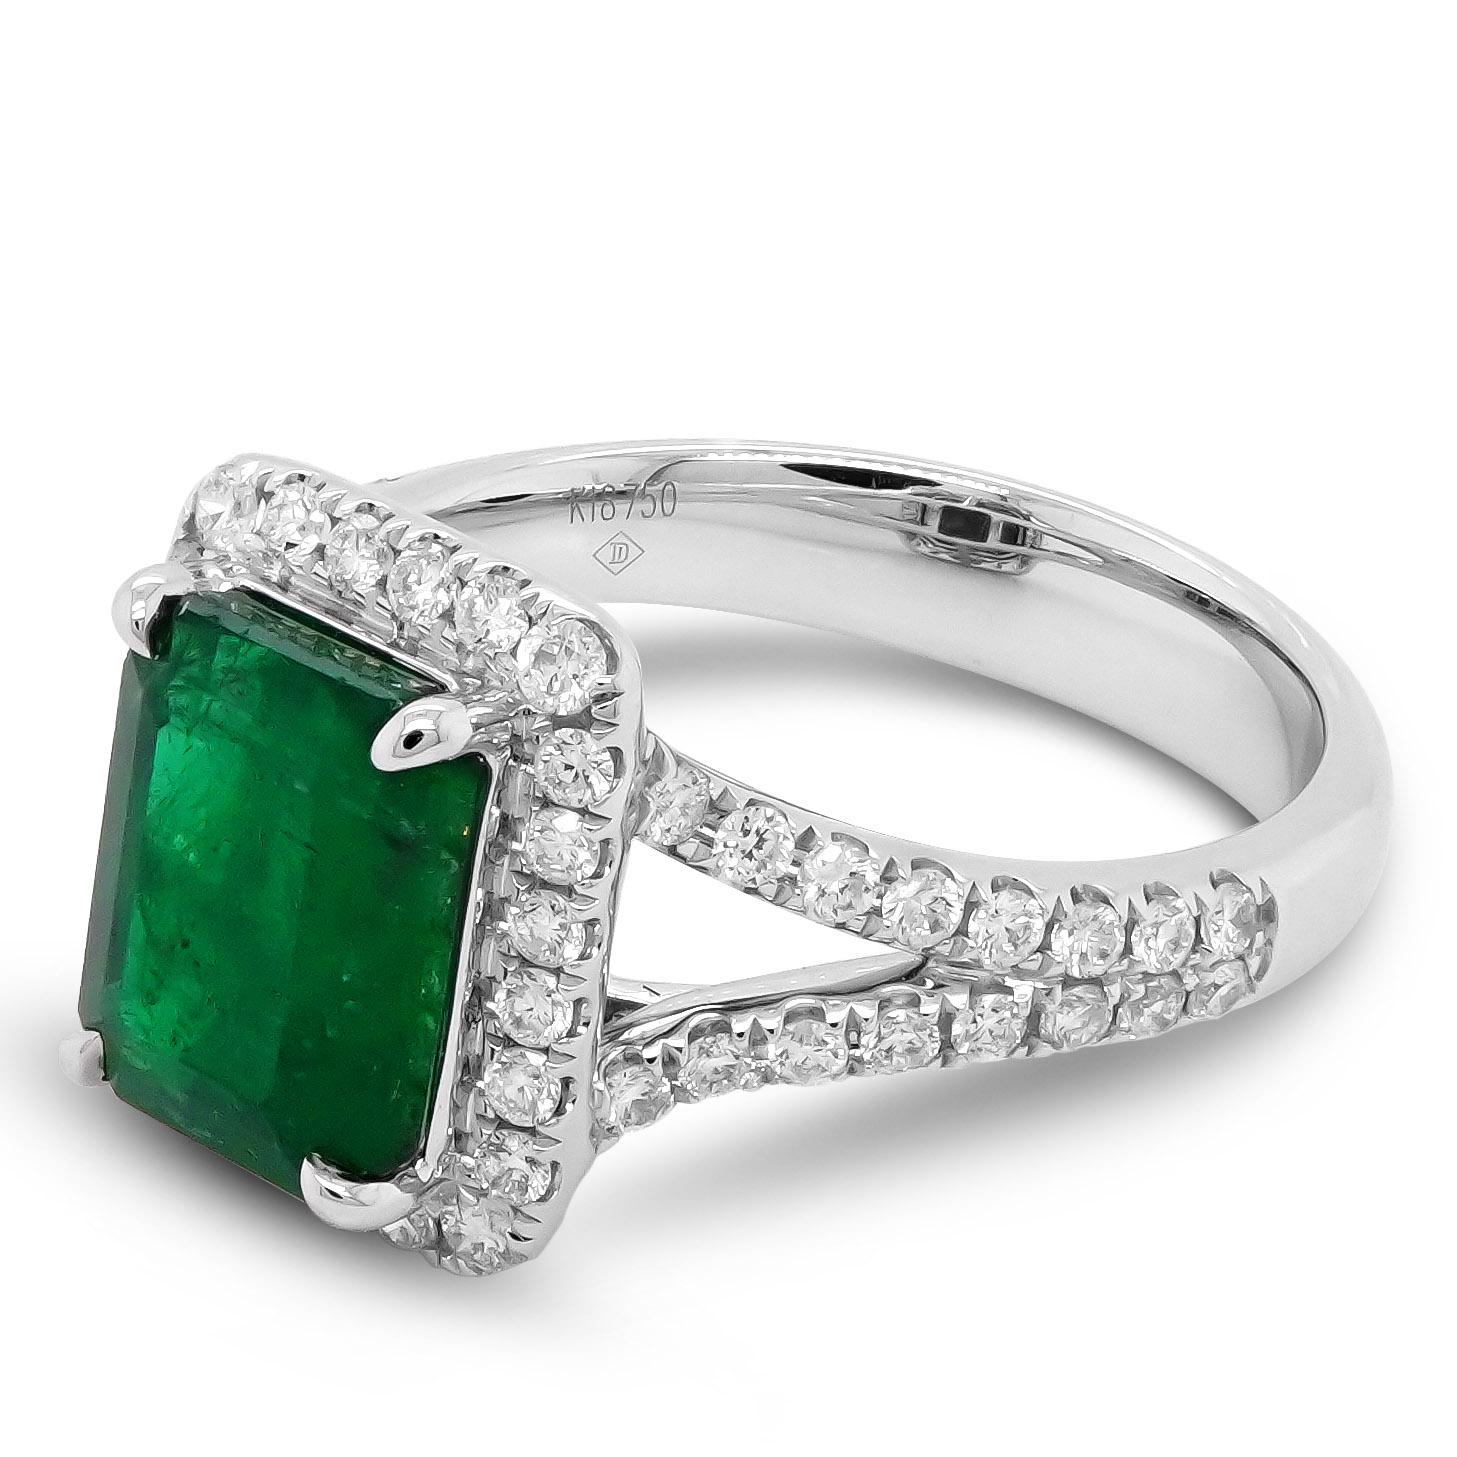 Ein hoch gesättigter, von IGI zertifizierter grüner Smaragd ist zusammen mit 0,56 Karat weißen, runden Brillanten gefasst. Der Smaragd wiegt 2,78 Karat und stammt aus Sambia in Afrika. 
Die Einzelheiten des Diamanten sind nachstehend aufgeführt: